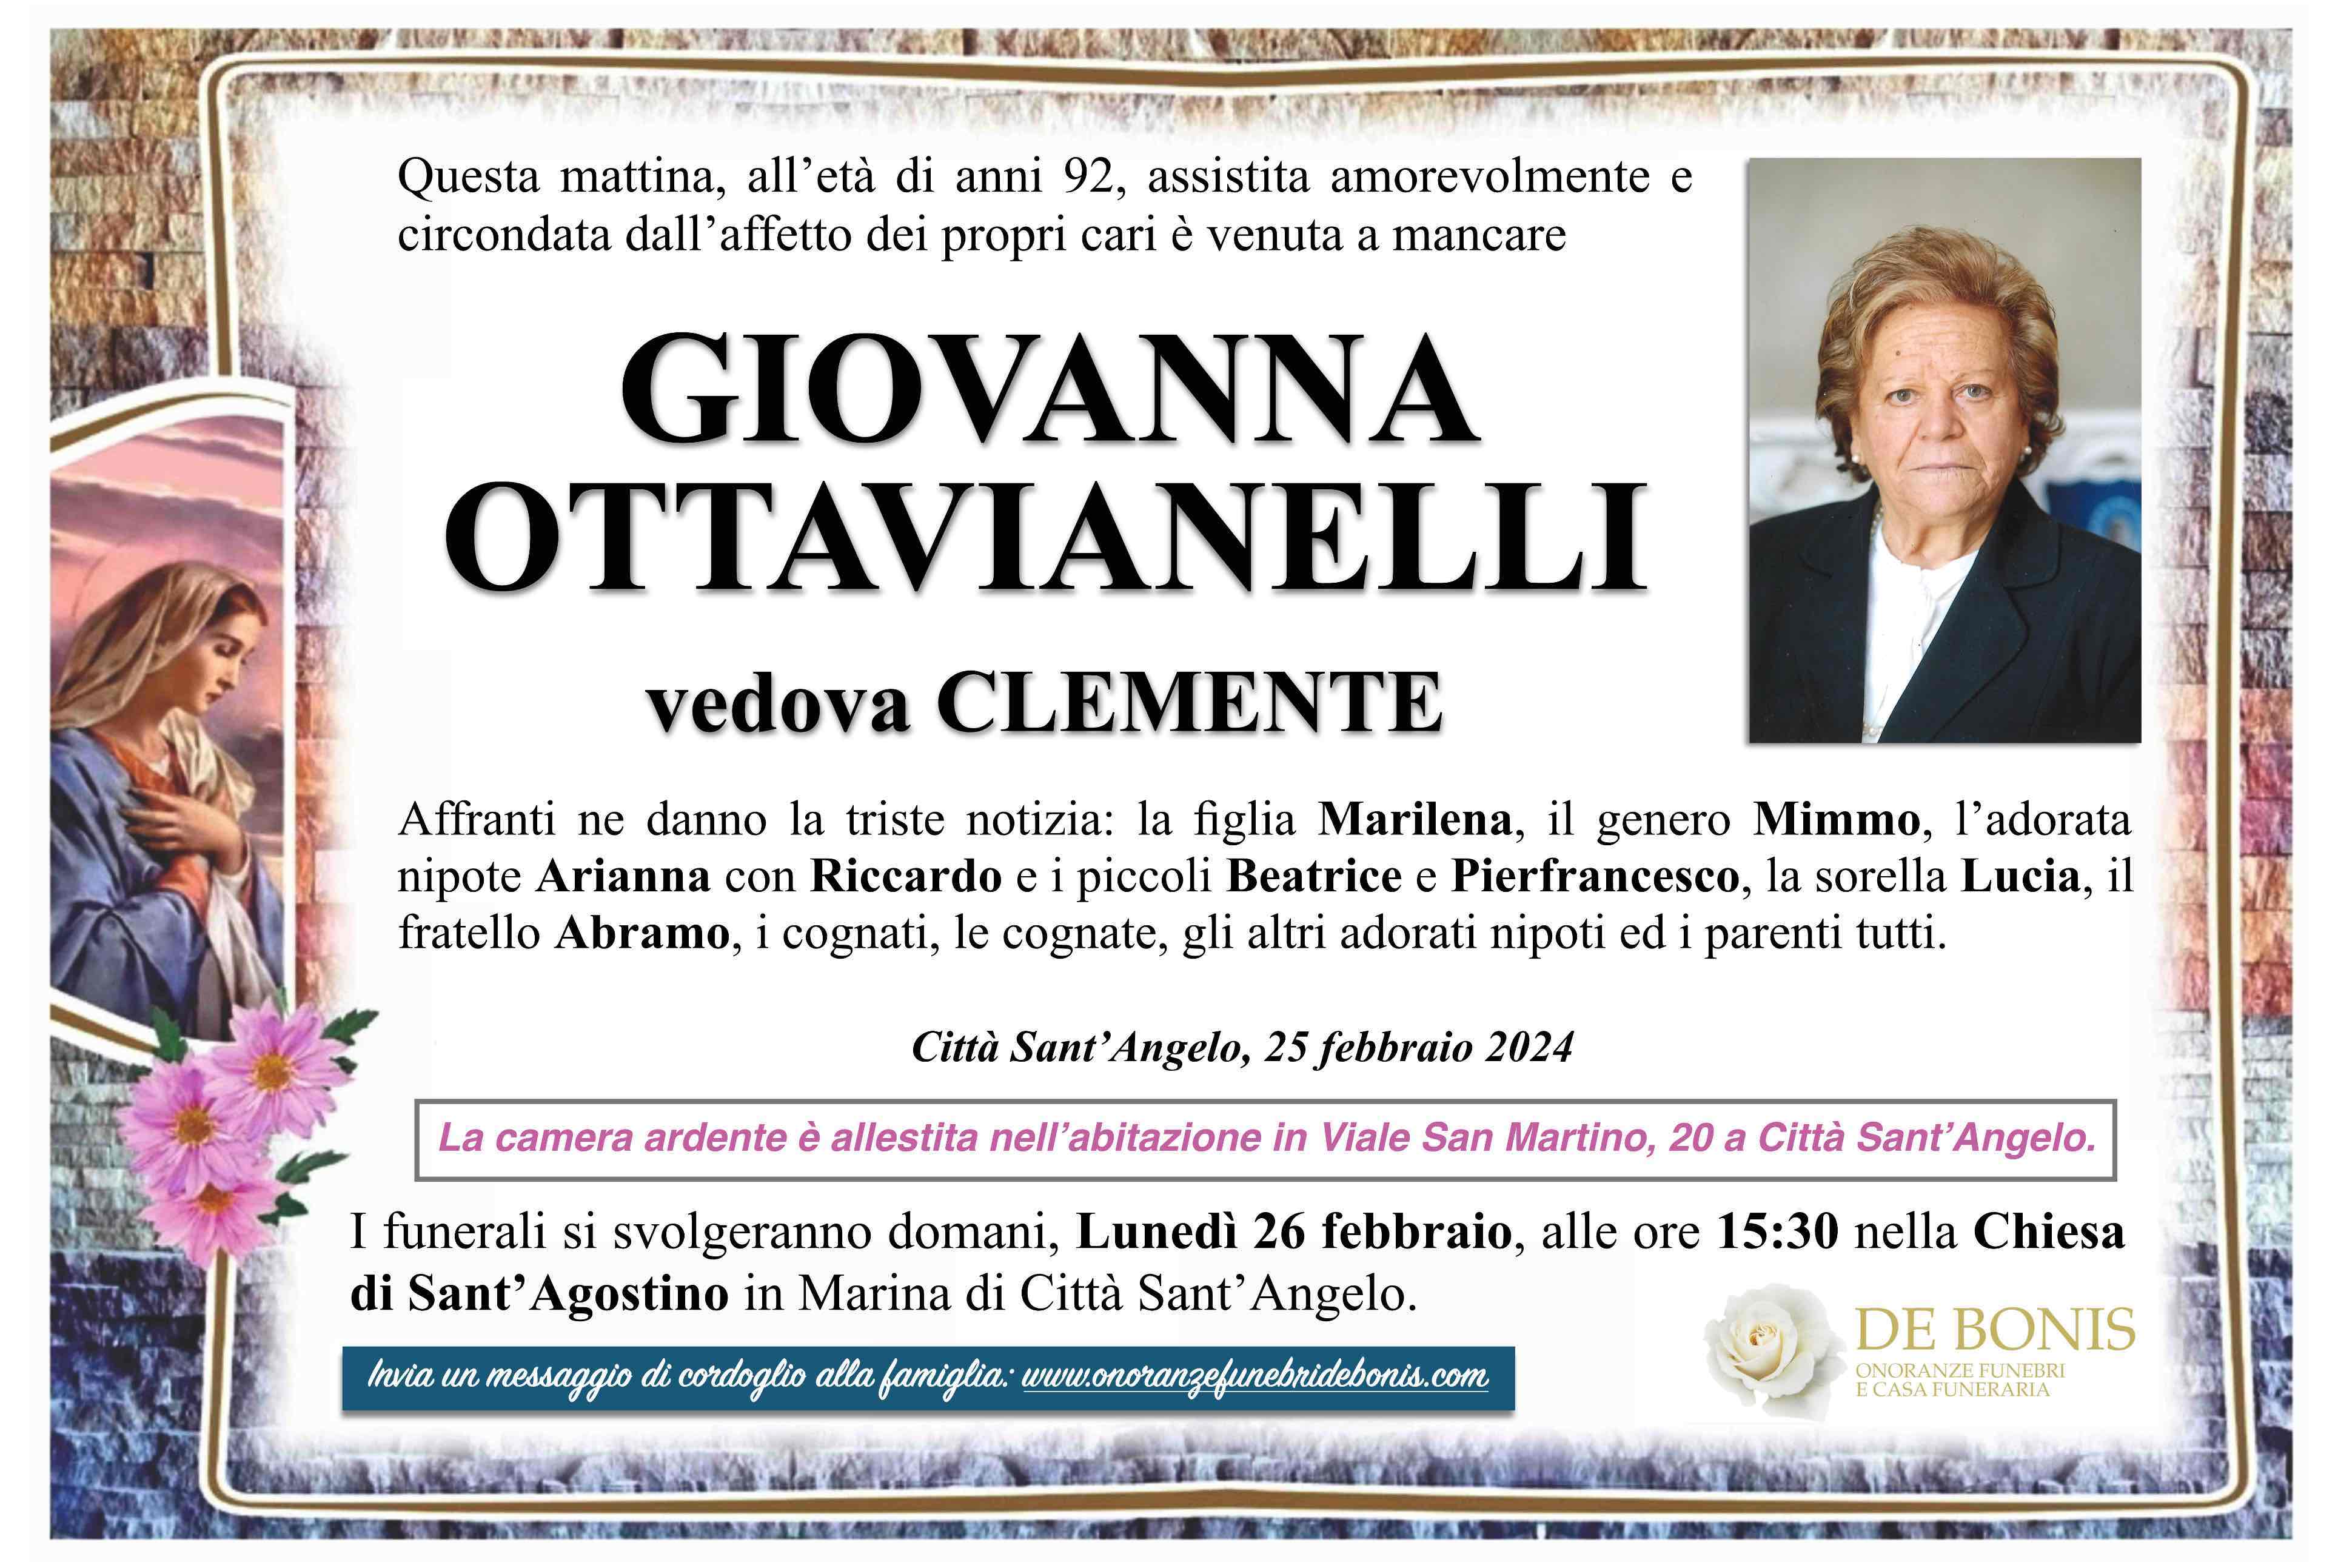 Giovanna Ottavianelli